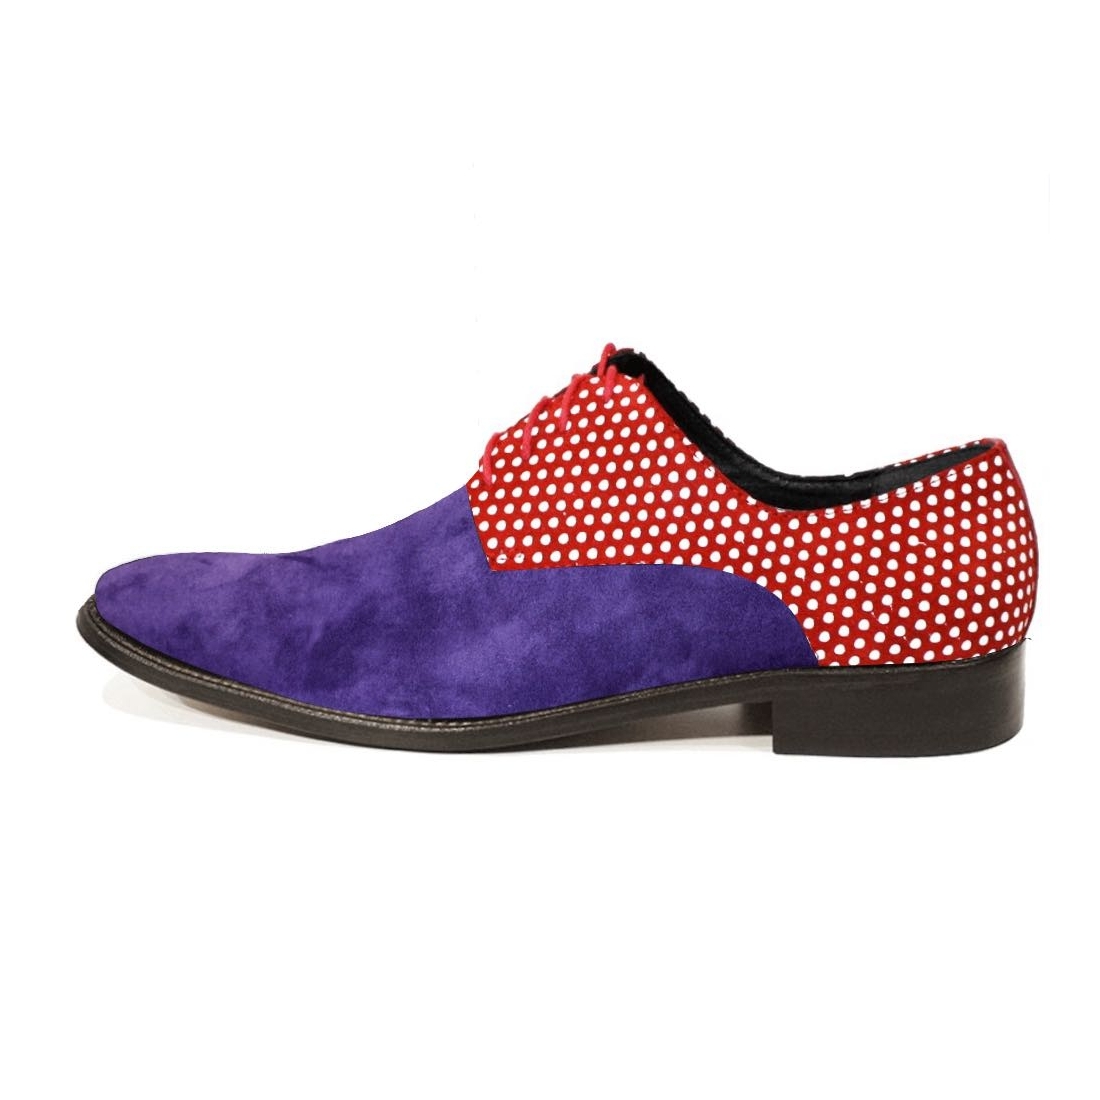 Modello Puntitto - Scarpe Classiche - Handmade Colorful Italian Leather Shoes